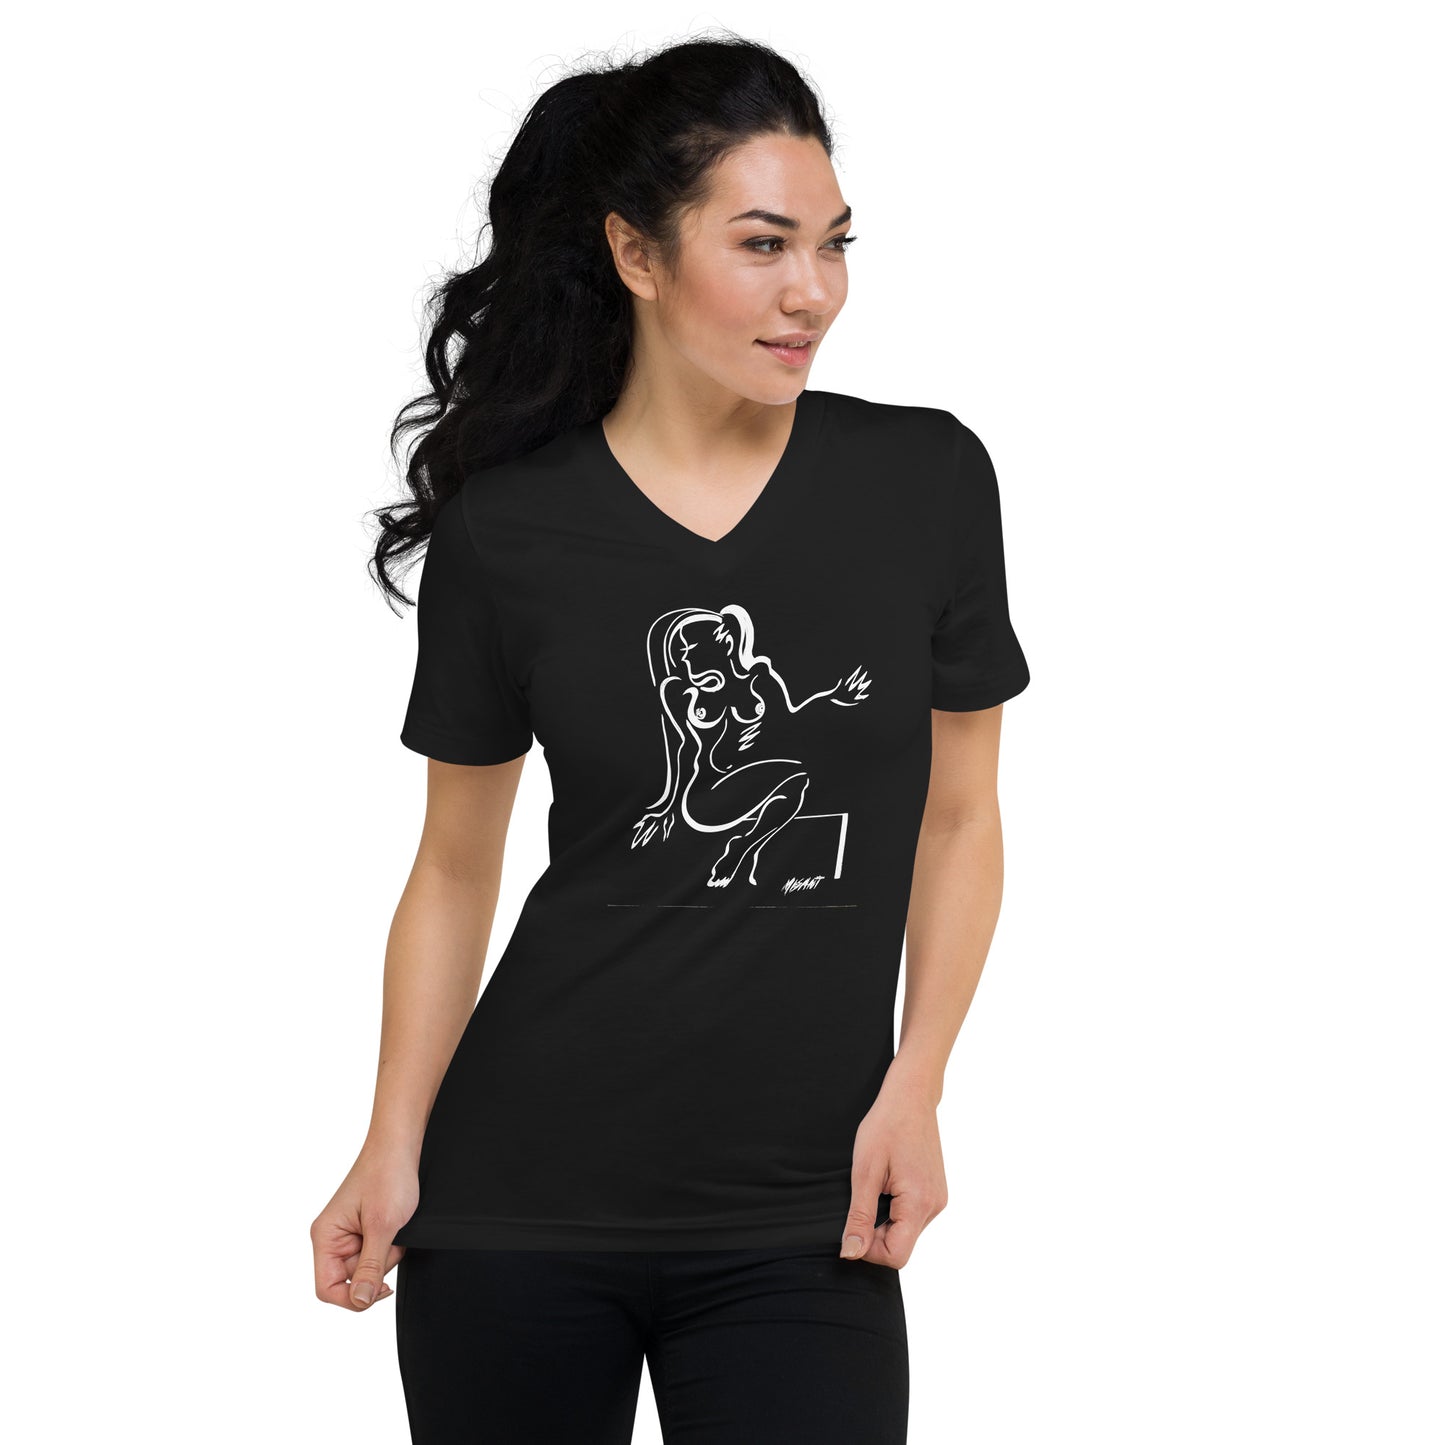 Santana Girl # 1 - Unisex Short Sleeve V-Neck T-Shirt